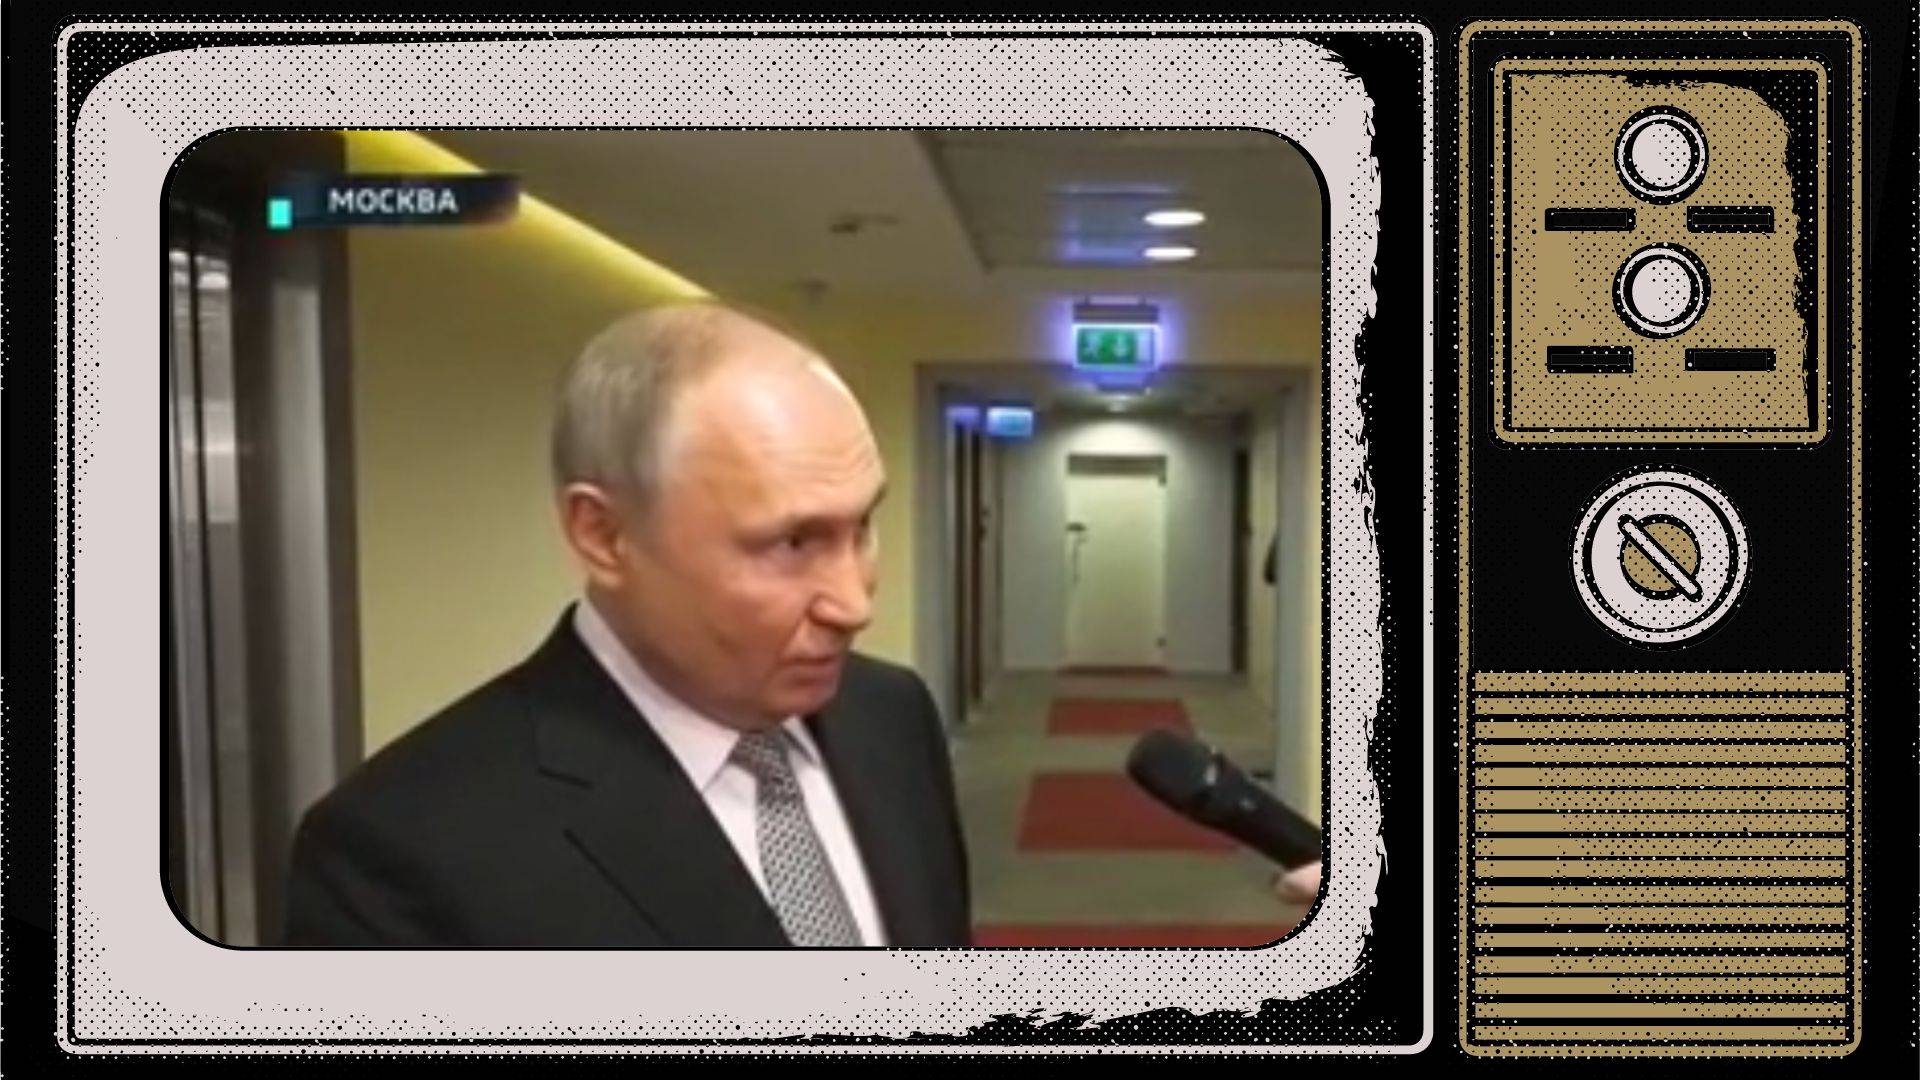 Grafika: w ramce starego telewizora kadr z Putinem mówiącym do mikrofonu na korytarzu koło windy